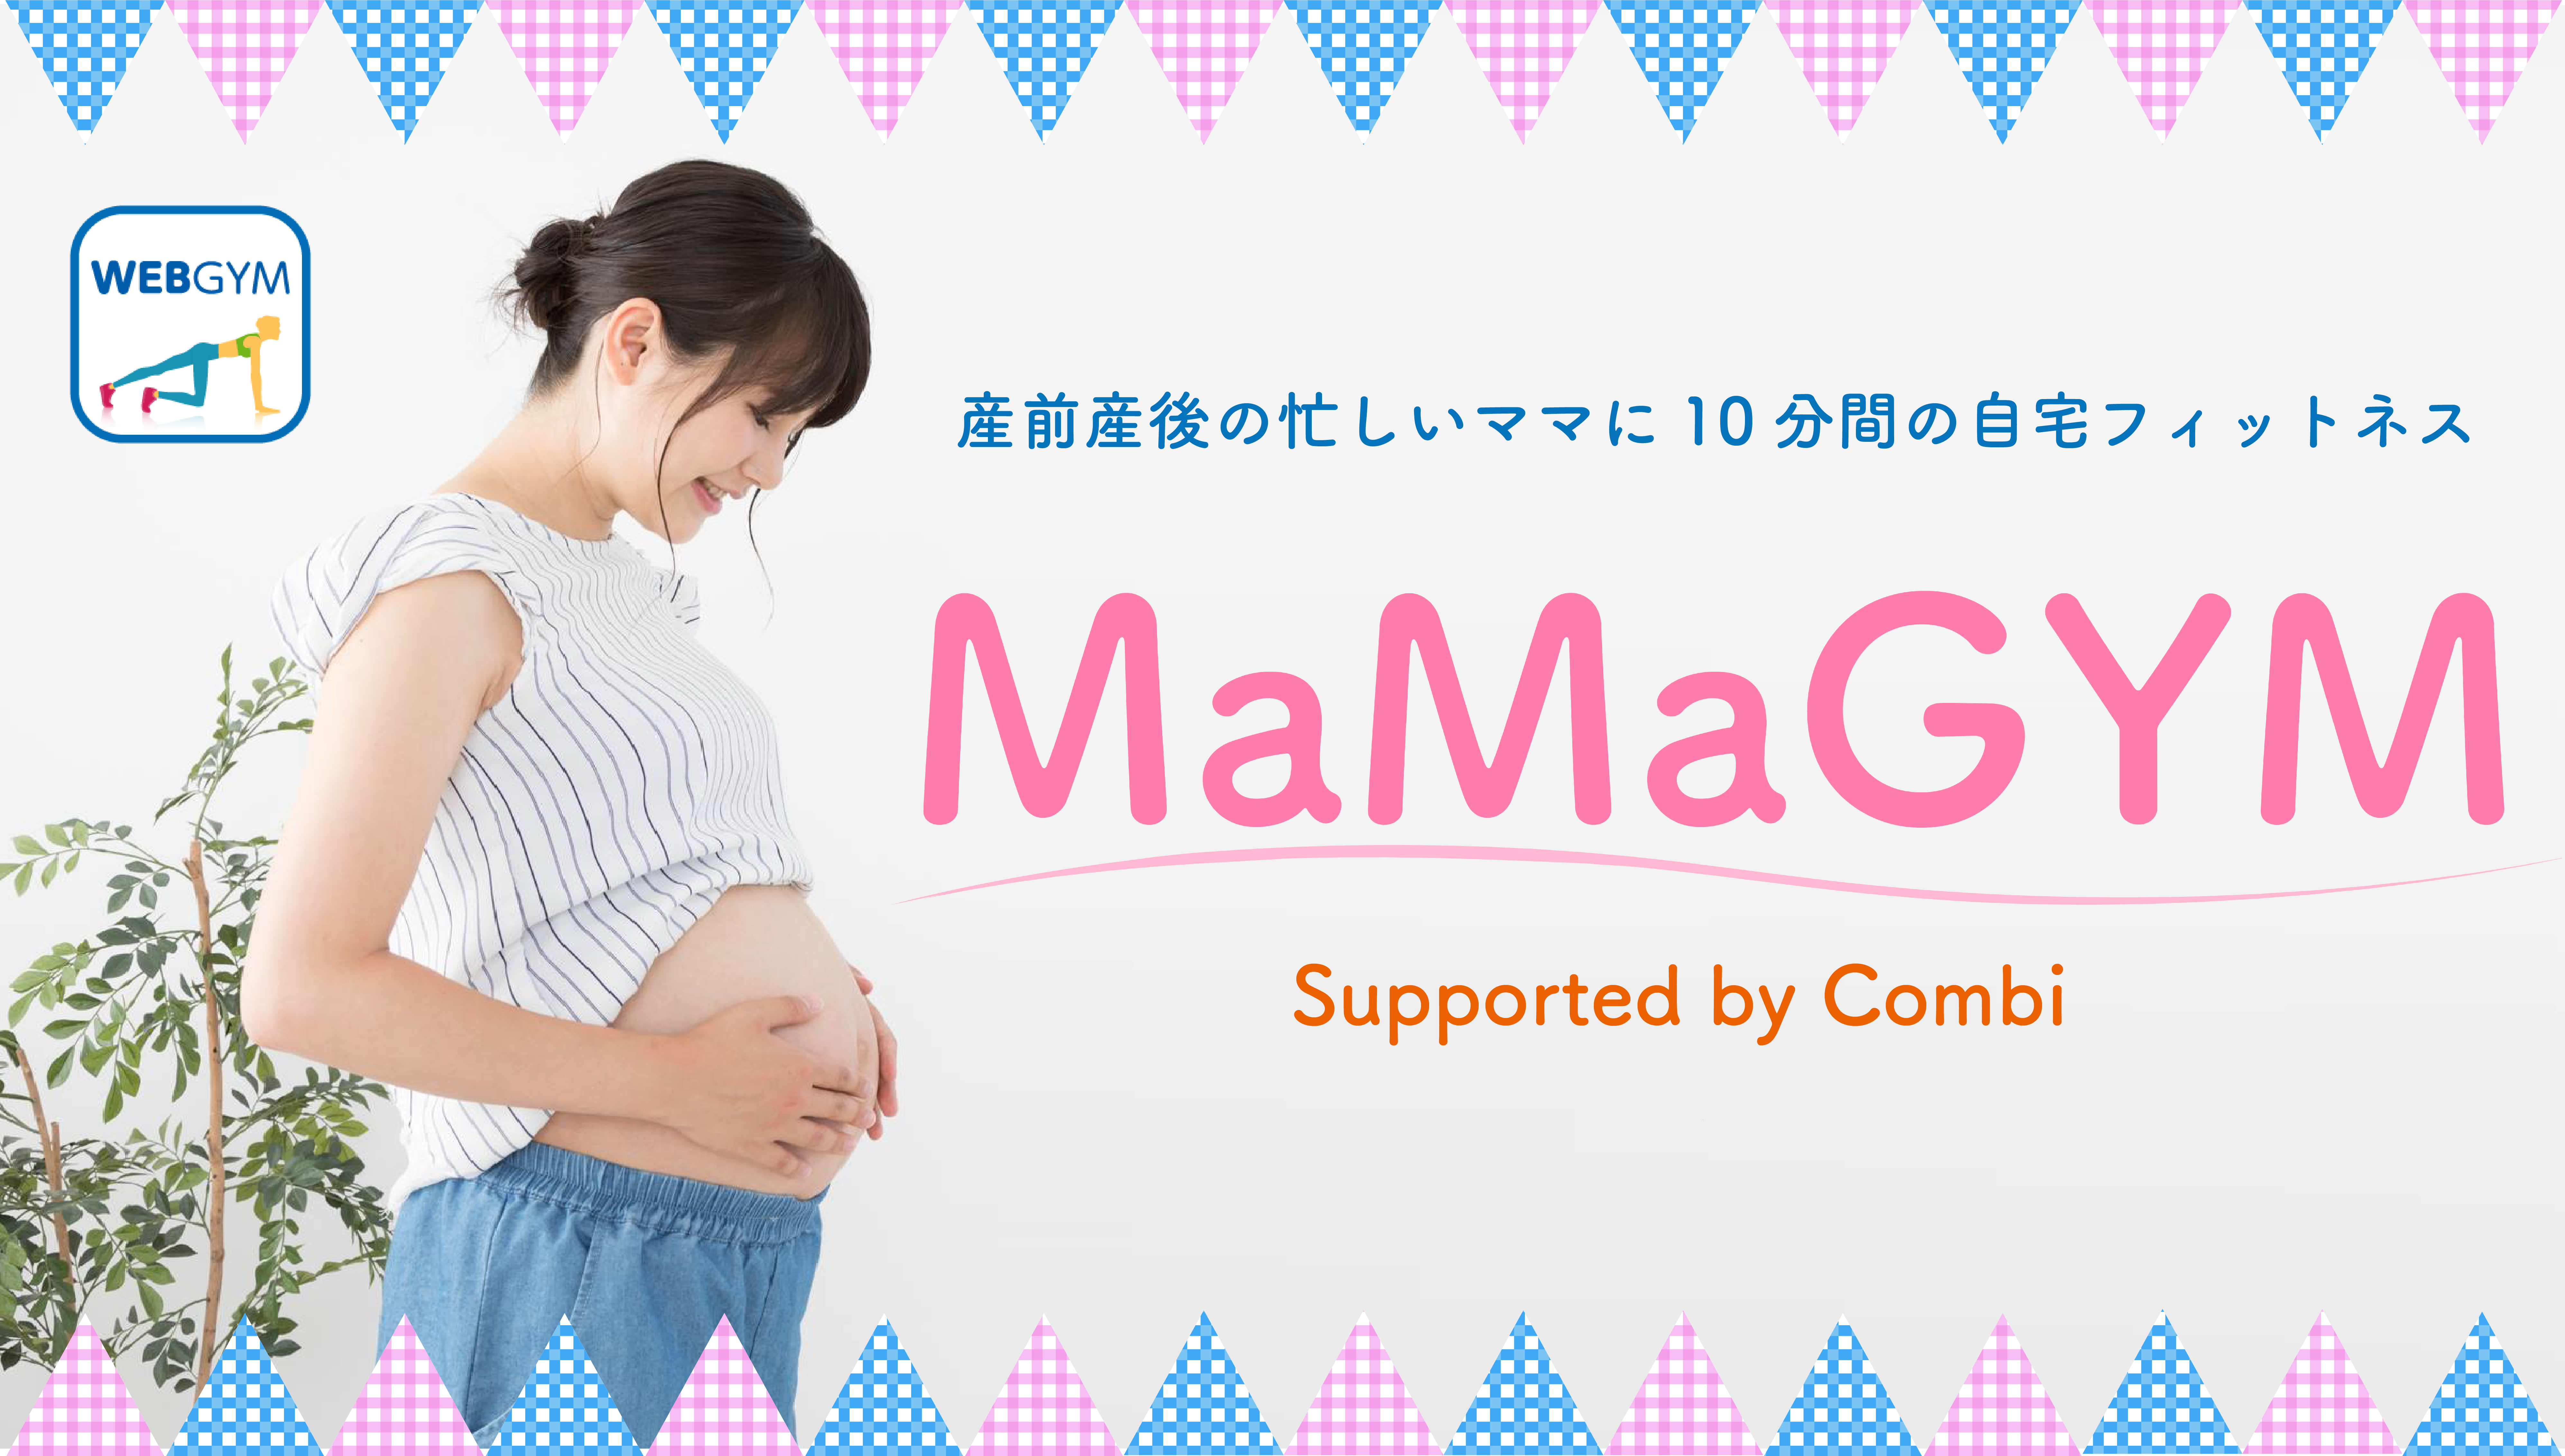 産前産後のママ向け自宅フィットネス 「MaMaGYM」動画 無料公開